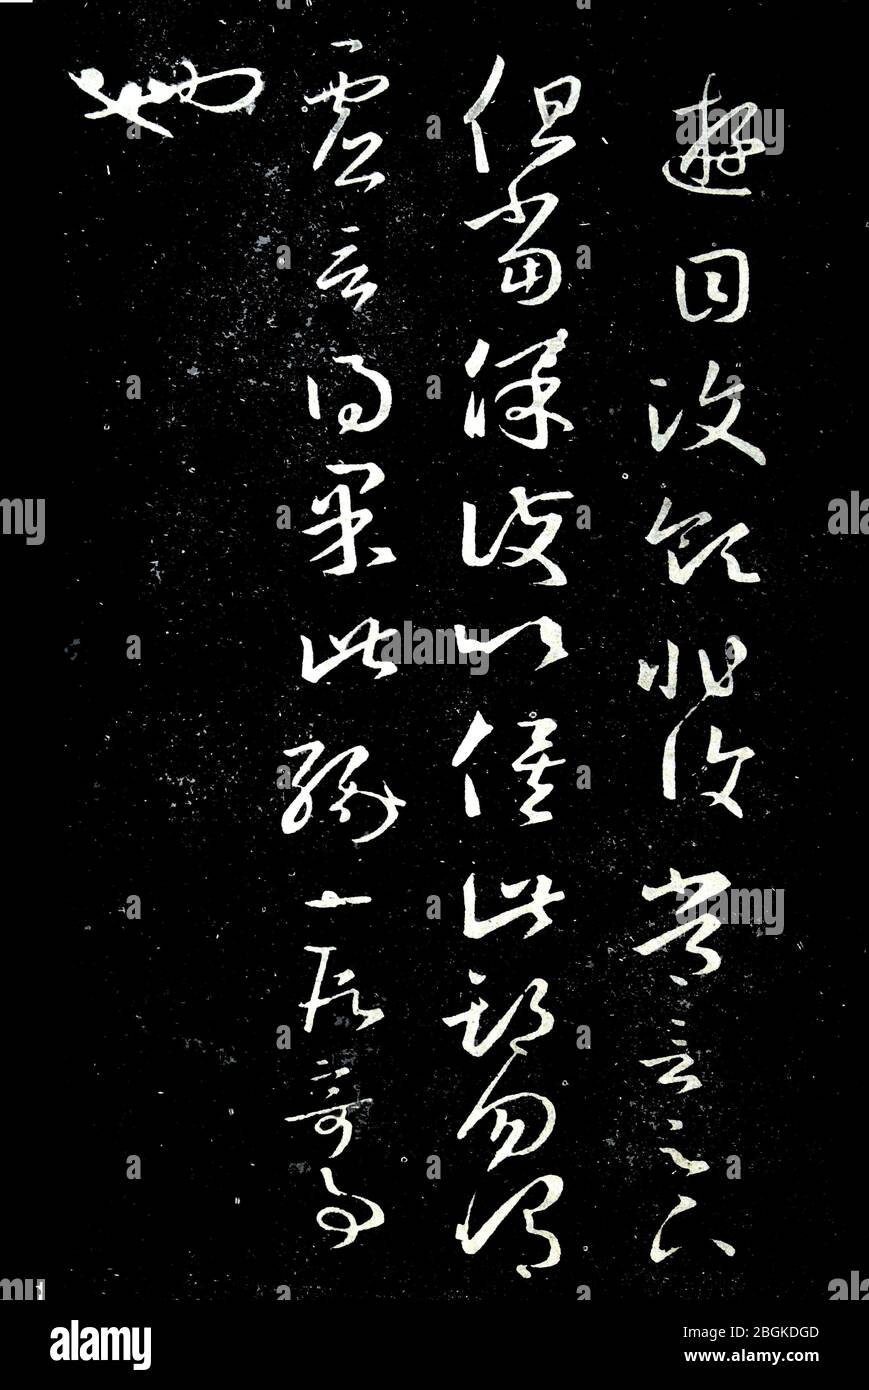 Wang Xizhi'sSeventeen Posts Youmu Wenling est non-commun mais devrait être protégé dans cette période Seventeen Posts est un chef-d'œuvre de Wang Xizhi cursiv Banque D'Images